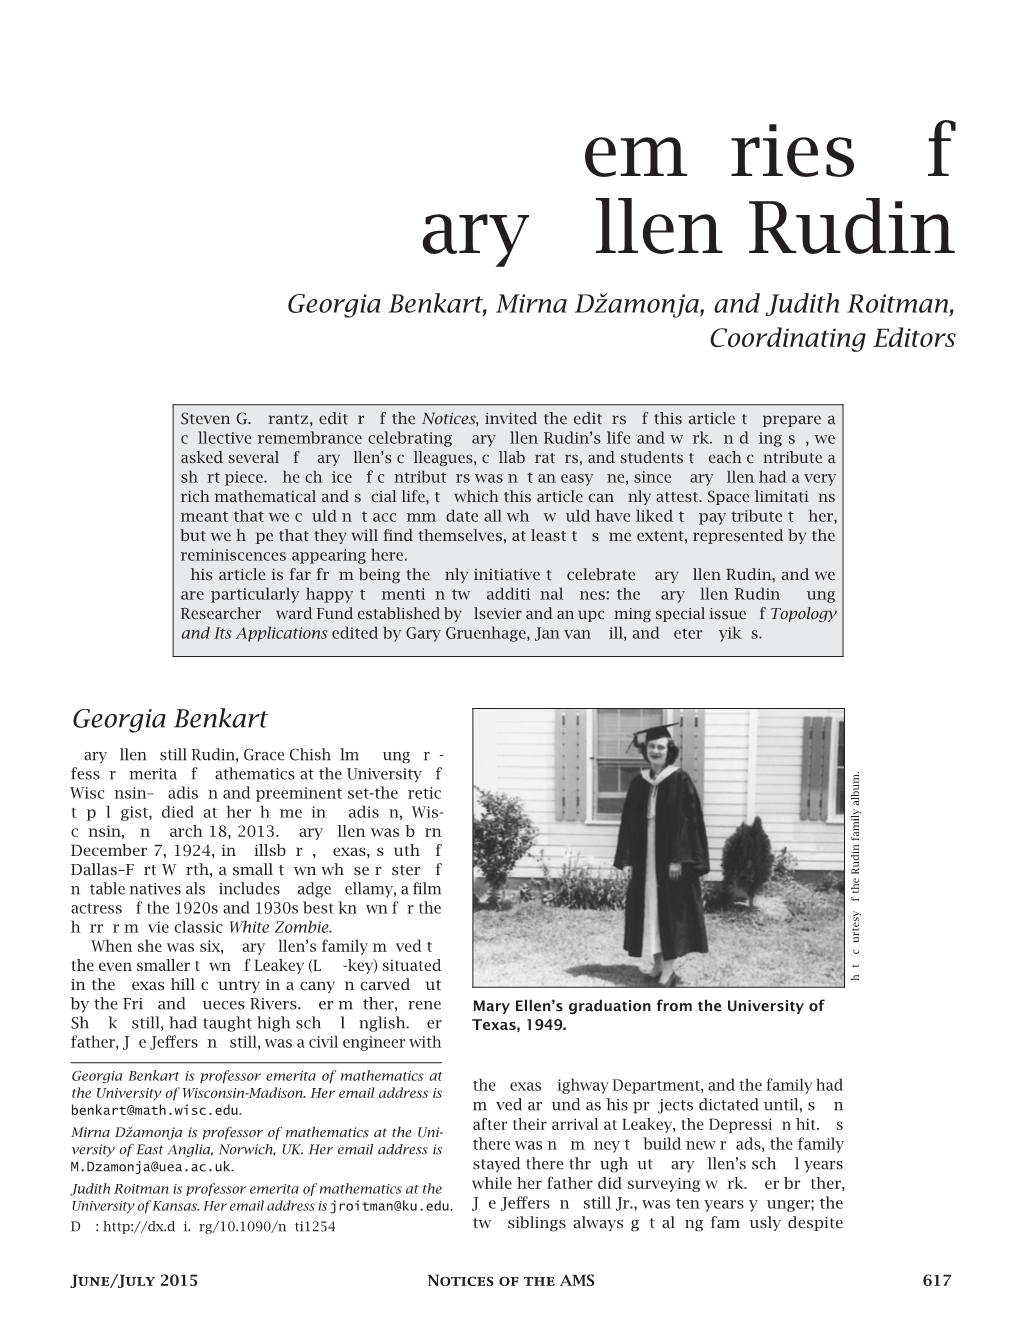 Memories of Mary Ellen Rudin